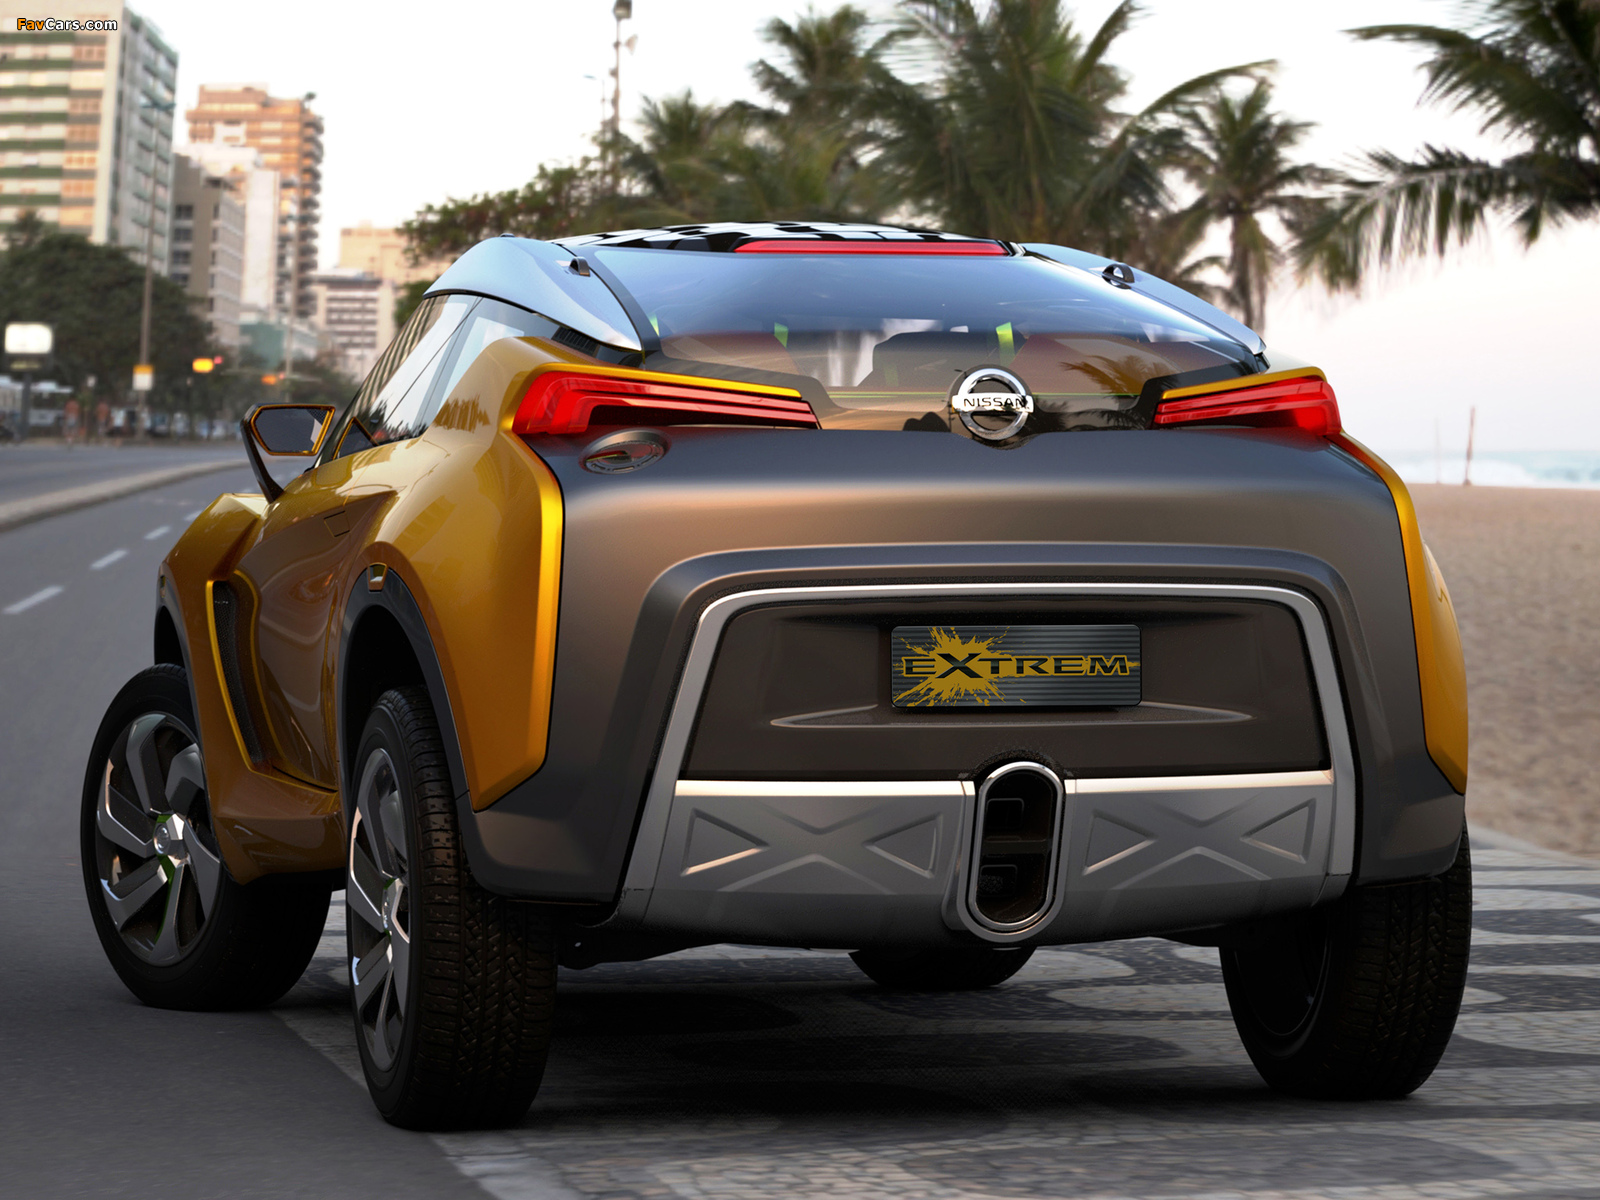 Nissan Extrem Concept 2012 images (1600 x 1200)